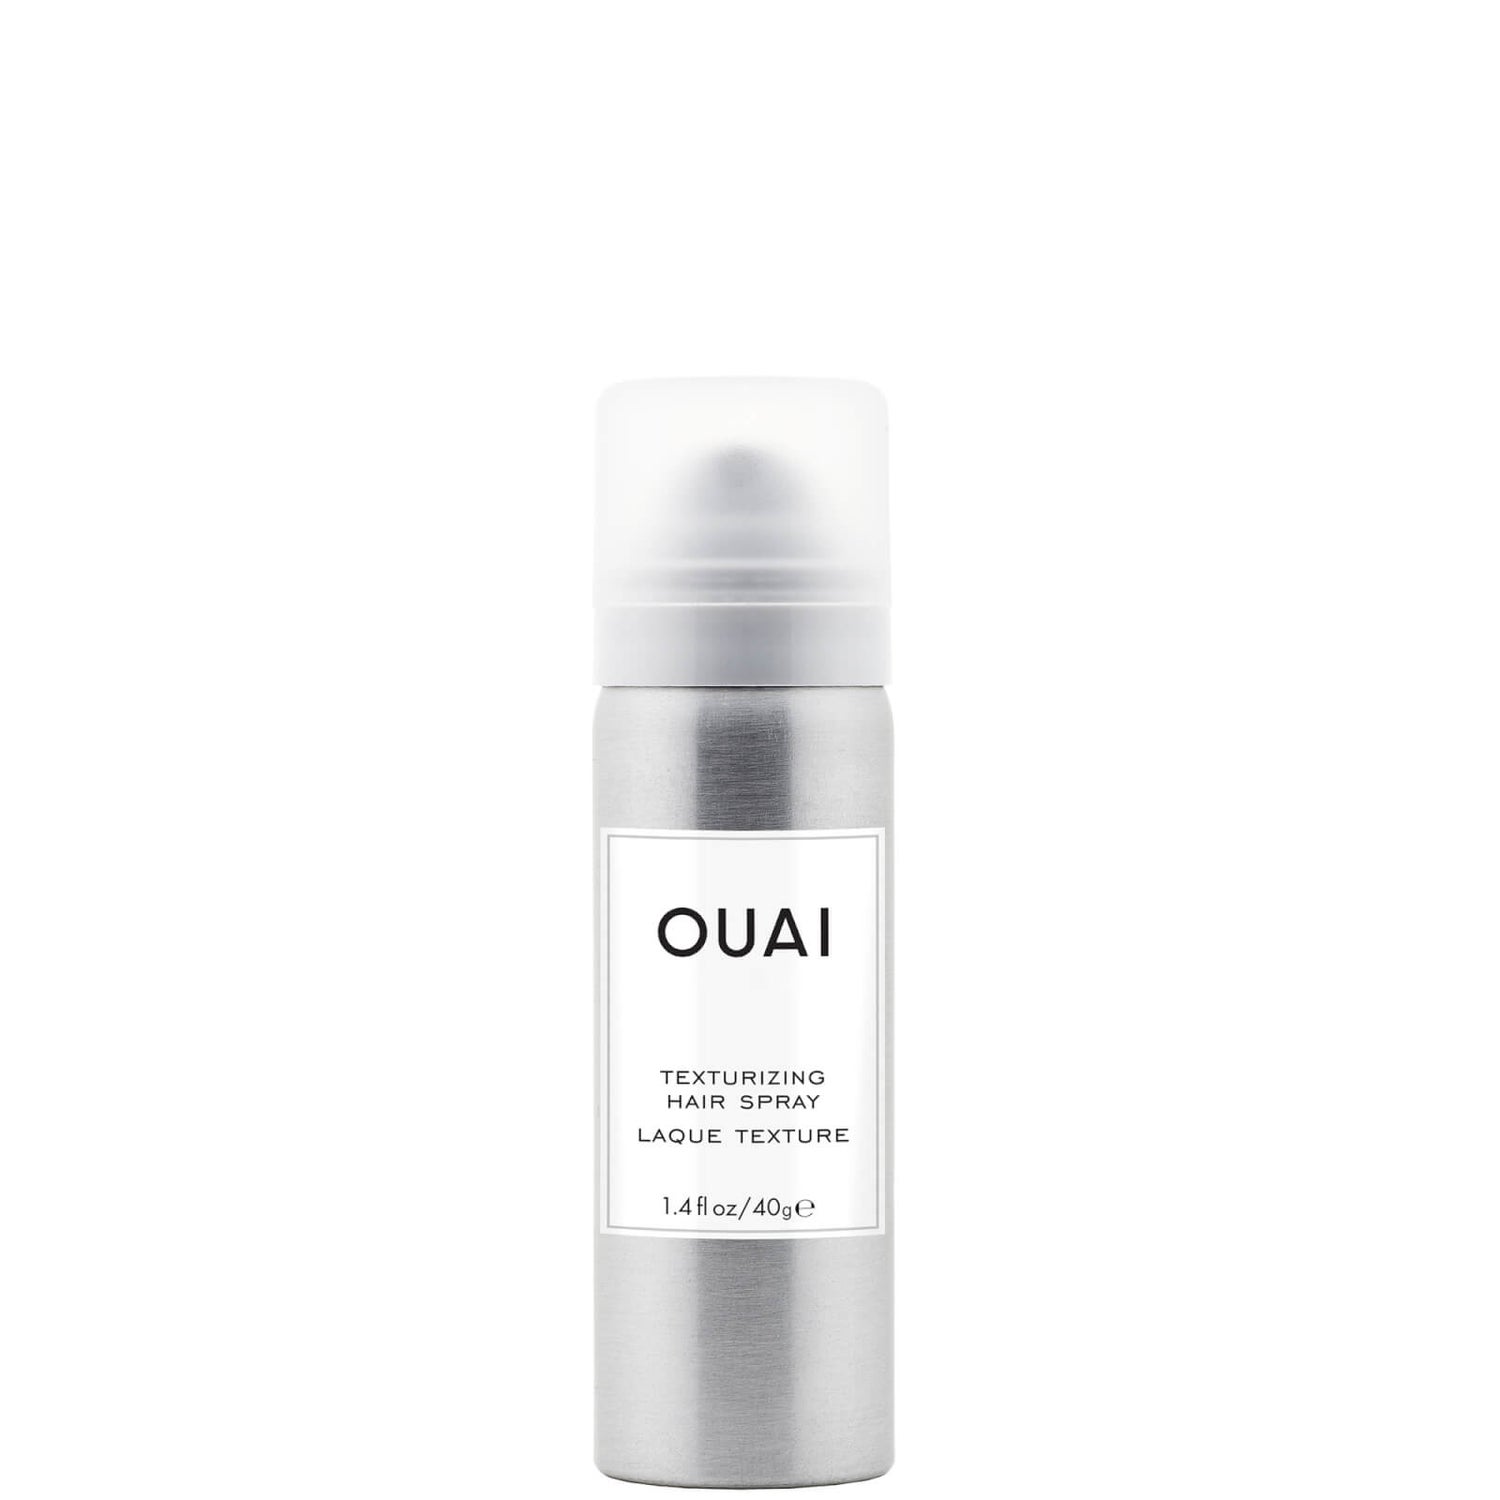 OUAI Texturizing Hair Spray 40 g